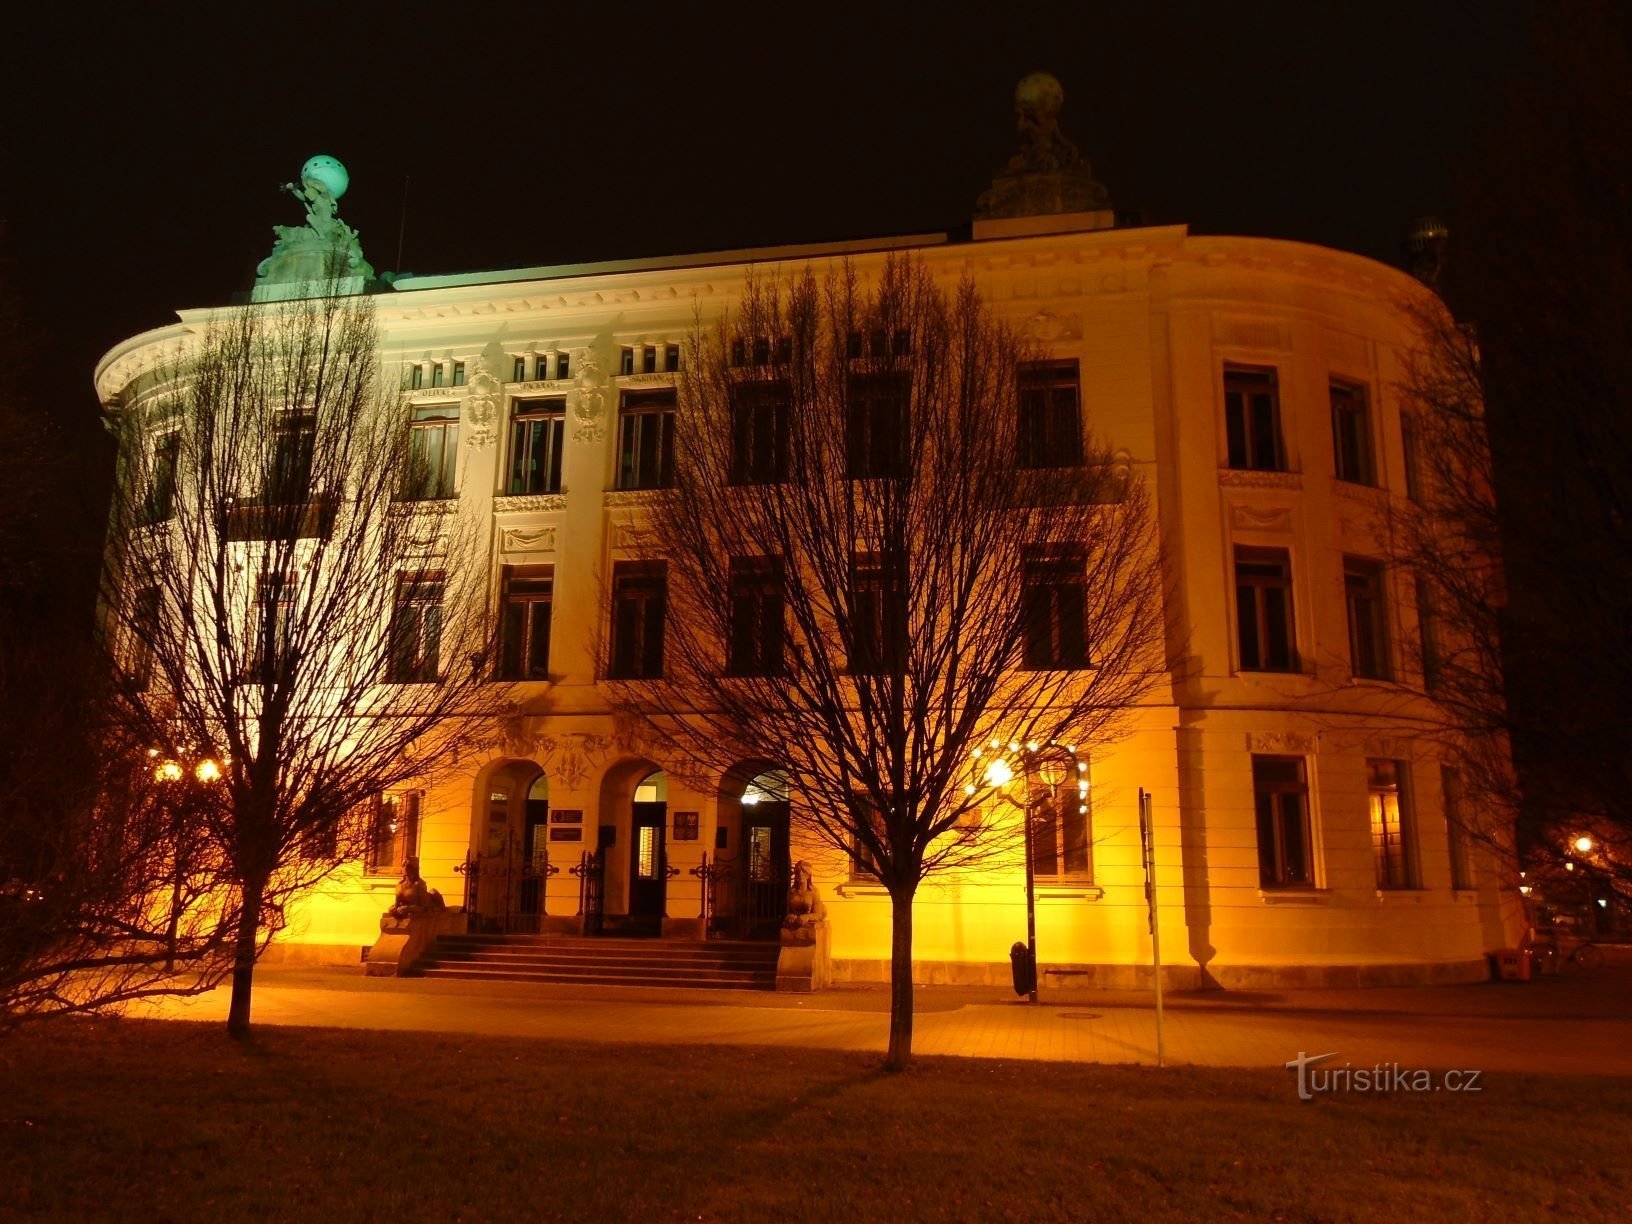 Κτήριο της πρώην επιχειρηματικής ακαδημίας (Hradec Králové, 3.12.2017 Δεκεμβρίου XNUMX)